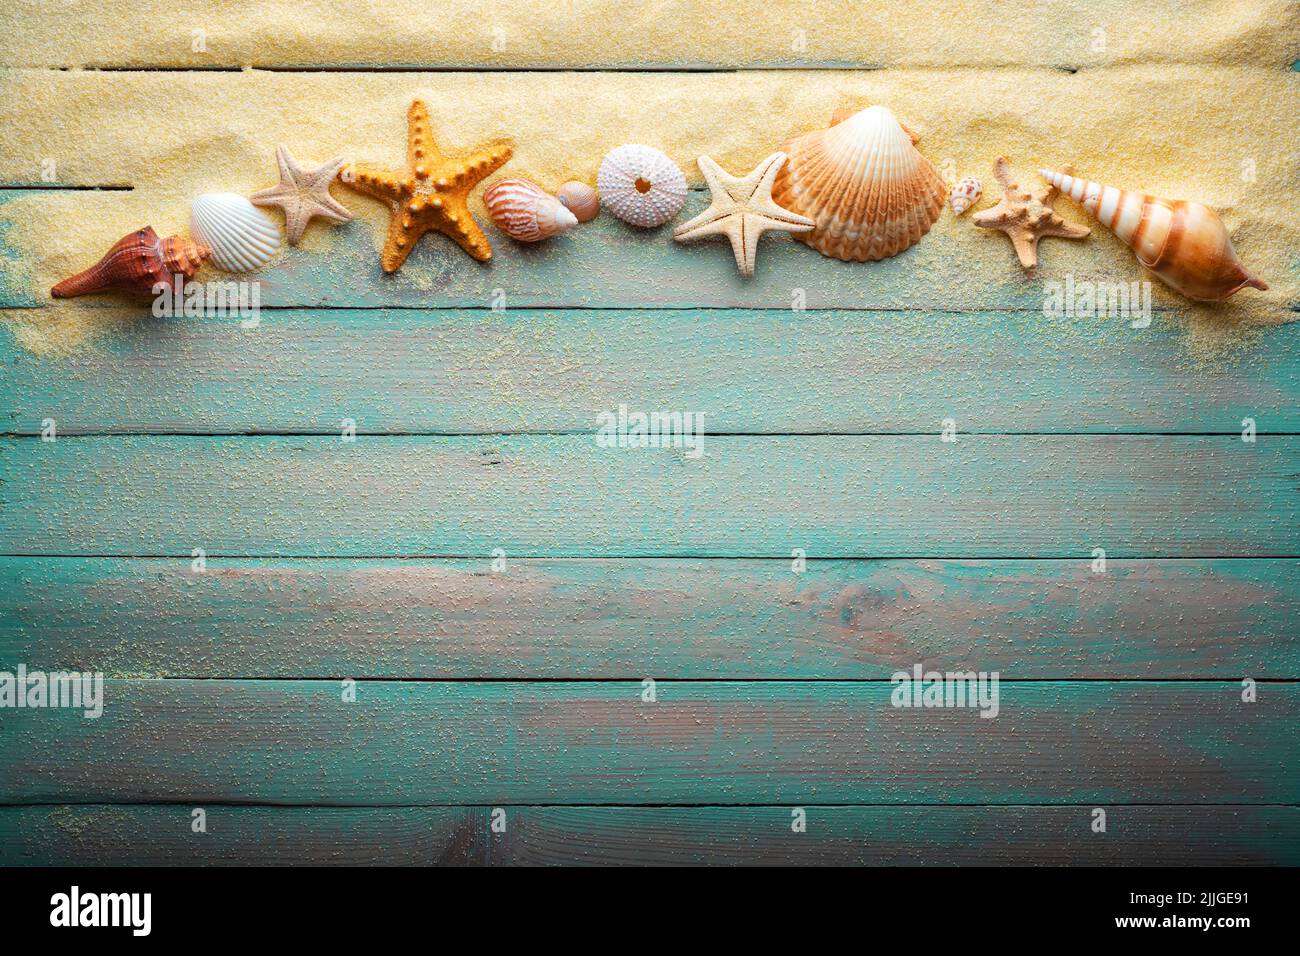 Ferien- und Sommerzeitkonzept mit Seesternen und Muscheln auf einem türkisfarbenen Holztisch mit Sand Stockfoto